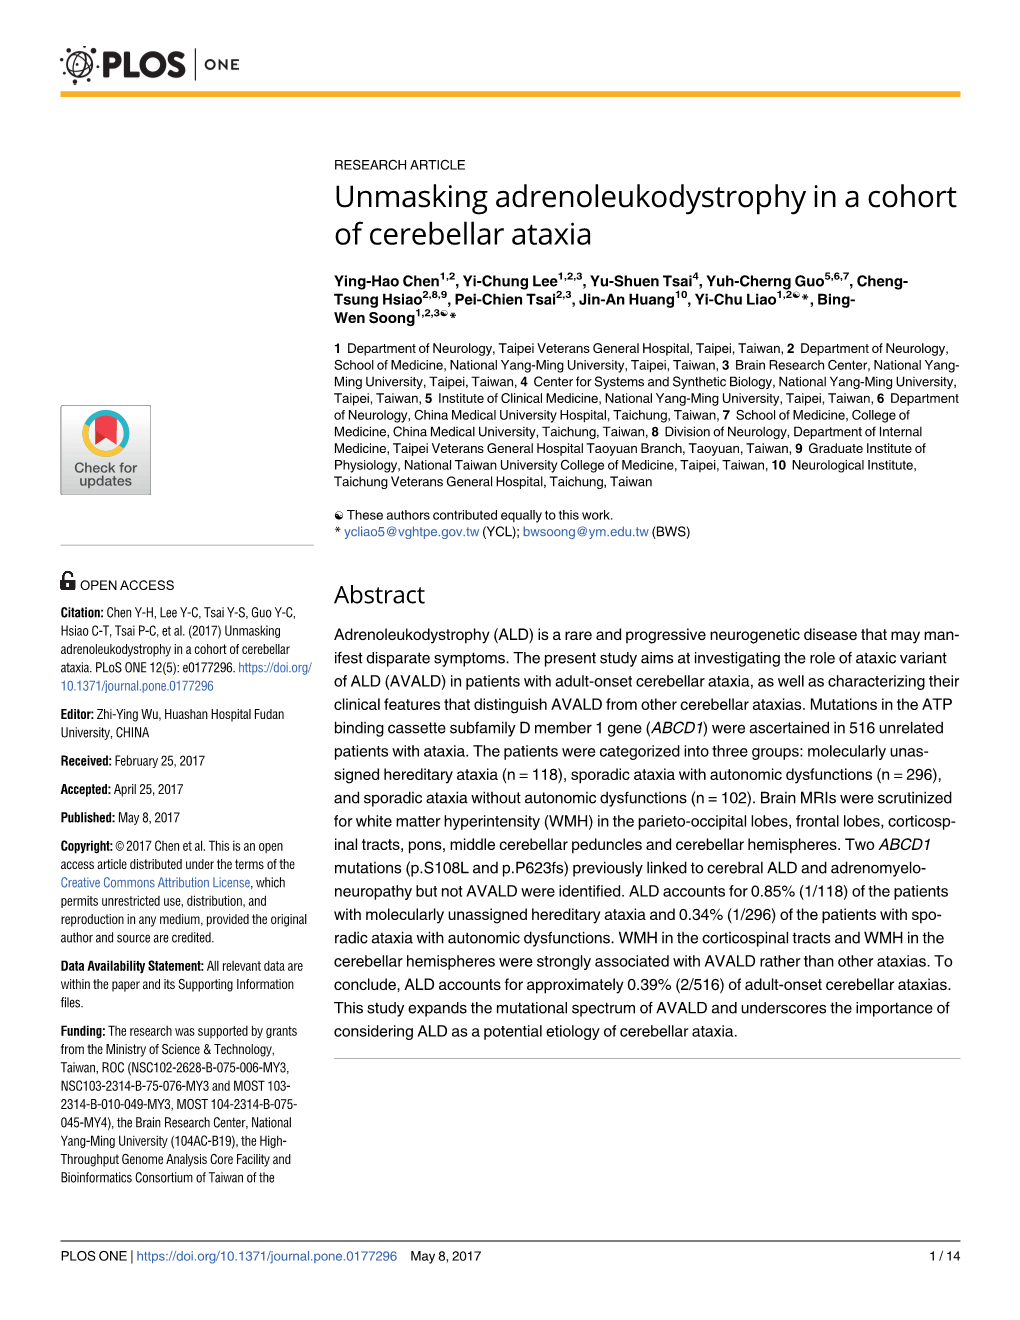 Unmasking Adrenoleukodystrophy in a Cohort of Cerebellar Ataxia